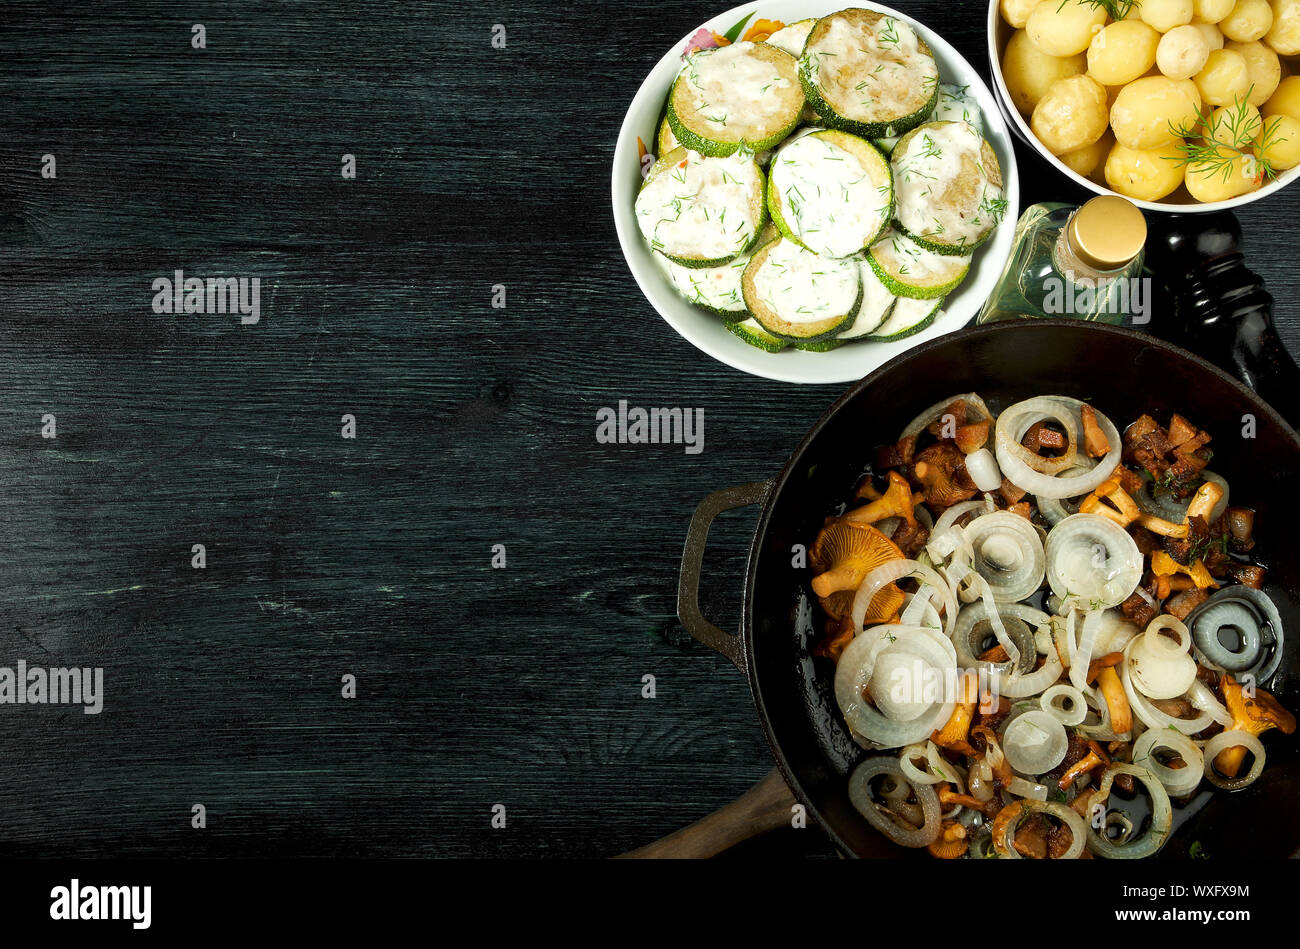 Gemüse auf dem Hintergrund. Gebratene zucchini Sauce in einen Teller. Junge gekochte Kartoffeln mit Dill in eine Schüssel geben. Gebratene Pfifferlinge Brei Stockfoto